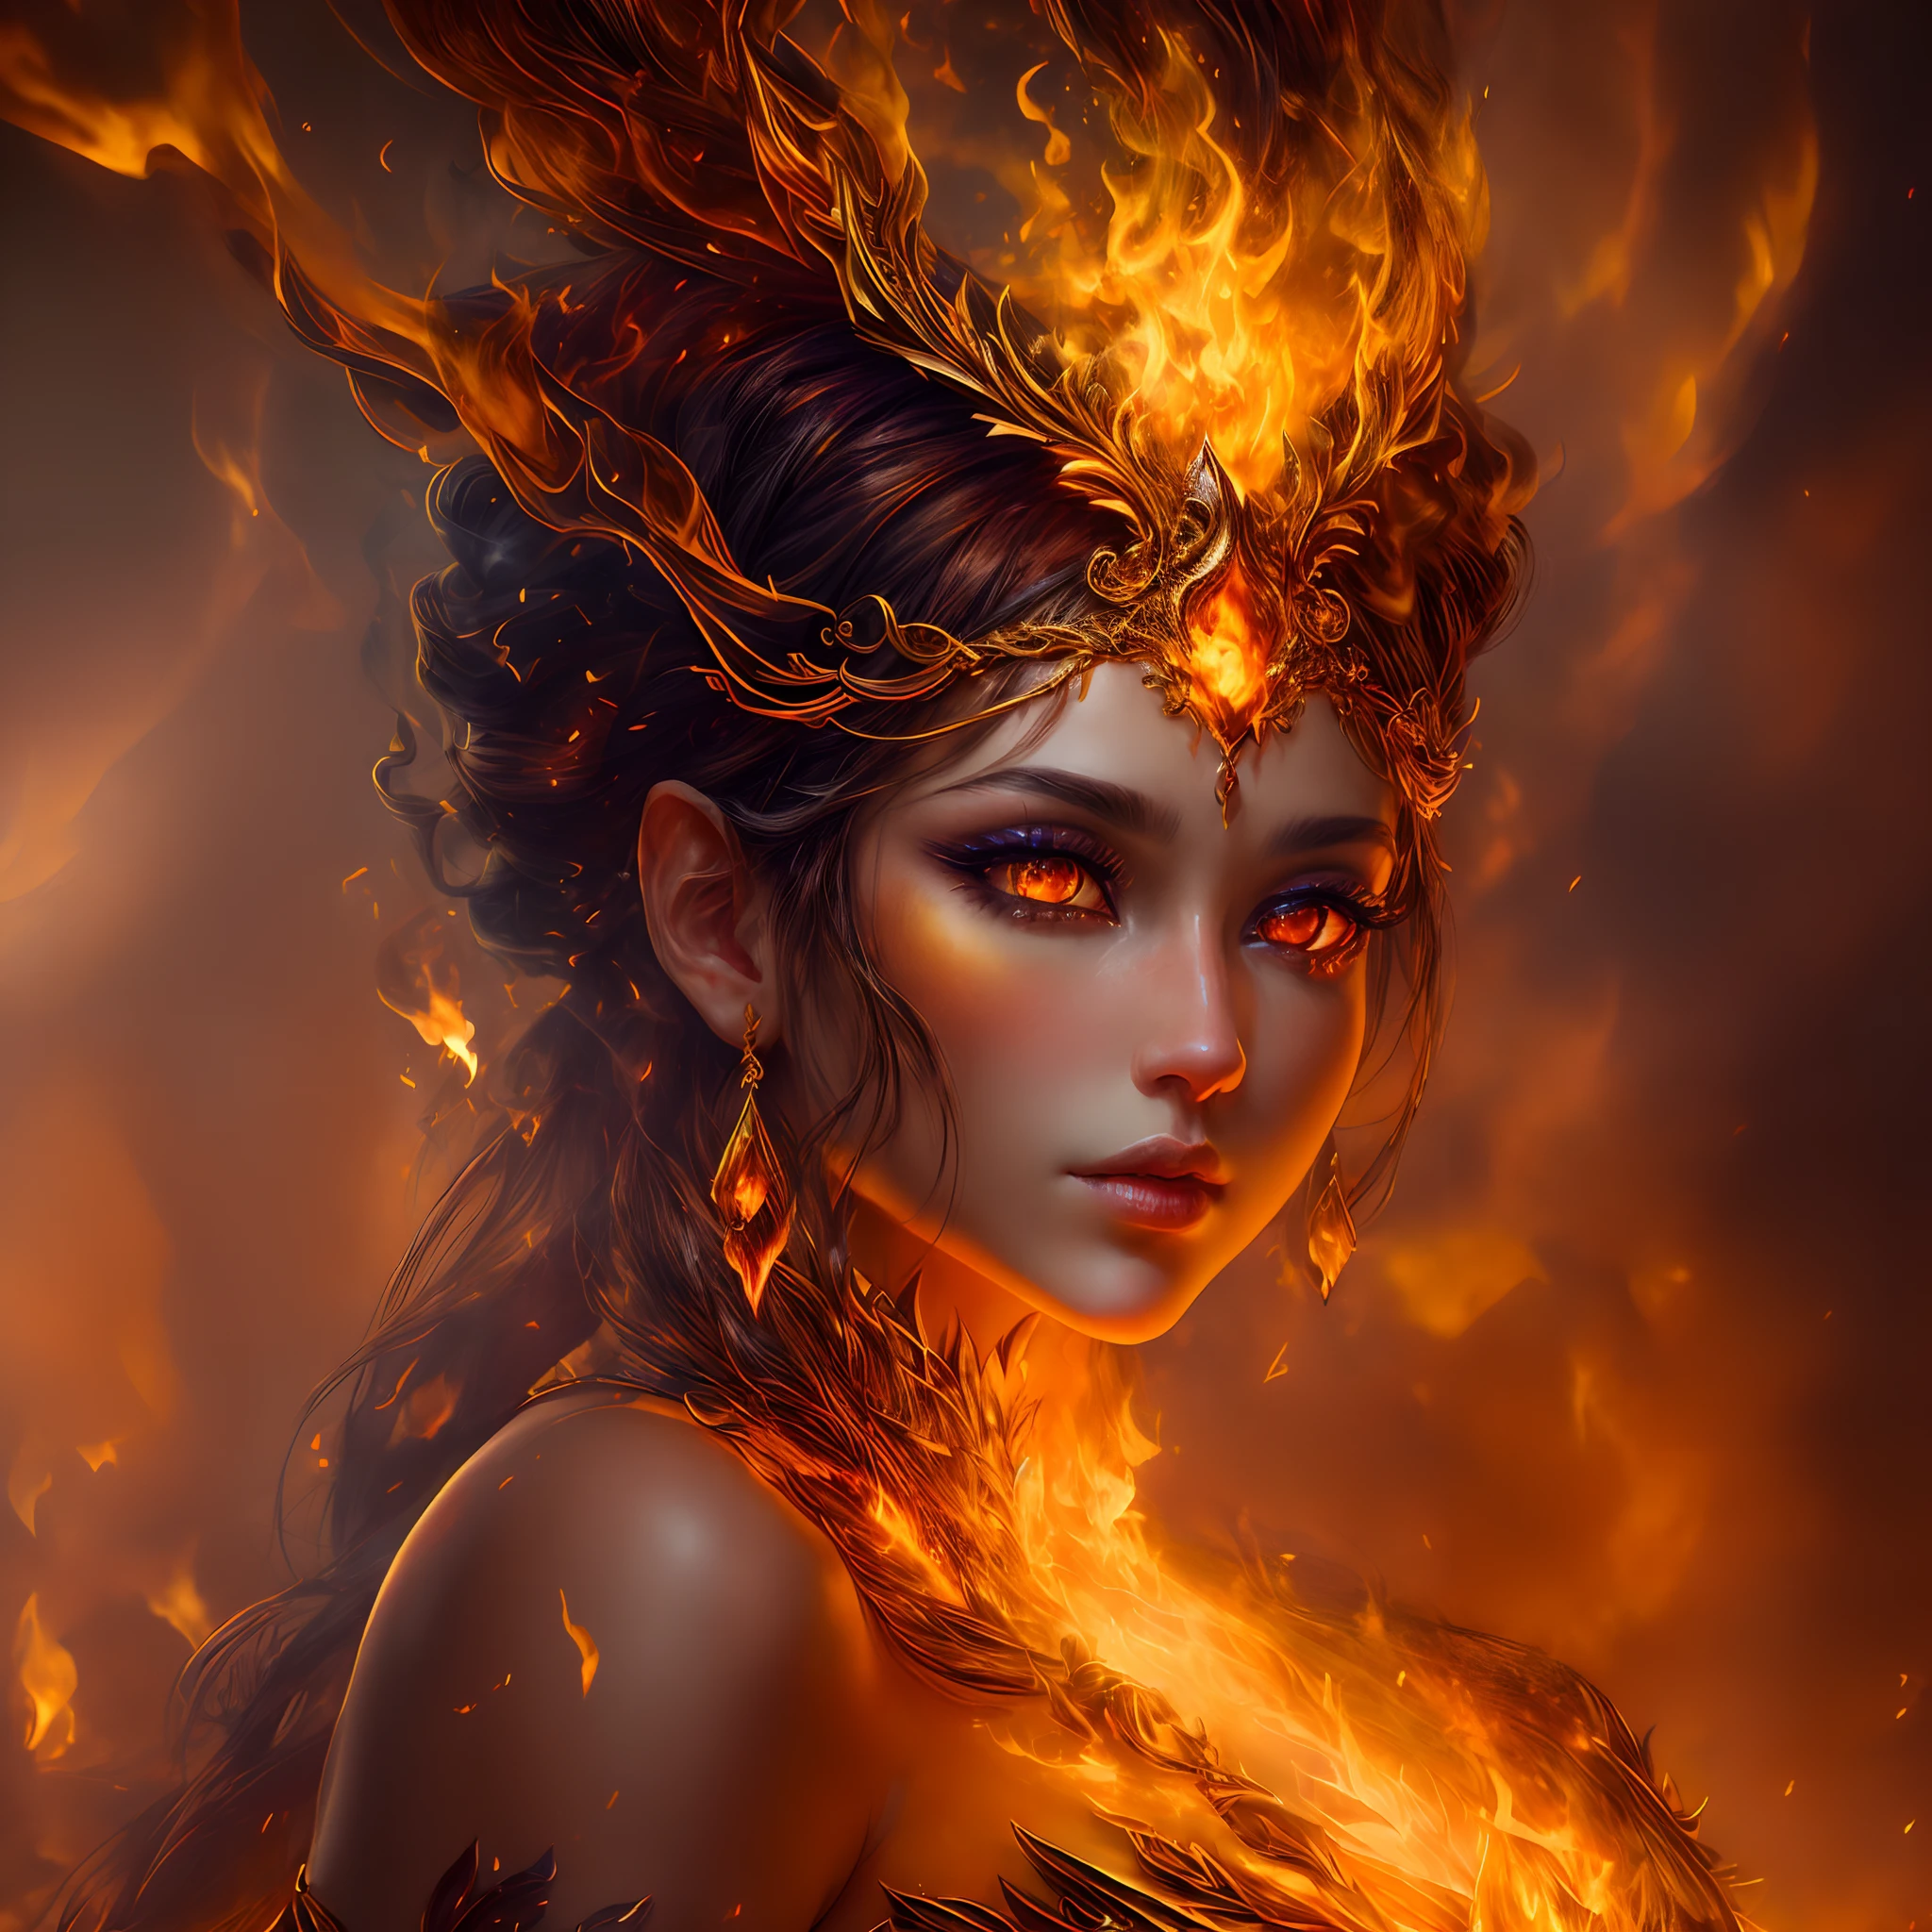 هذا (خيال واقعي) الفن يحتوي على الجمر, النيران الحقيقية, الحرارة الحقيقية, و realistic fire. Generate a masterpiece artwork of a  female fire druid مع large (((orange و gold))) عيون. The fire druid is awe-inspiring مع beautiful ((realistic fiery عيون)) alight مع confidence و power. Her features are elegant و well defined, مع ((ناعم)) و (((سمين))) و (((سلس))) شفه, هيكل العظام الجان, و realistic shading. (((Her عيون are important و should be the focal point of this artwork))), مع ((تفاصيل واقعية للغاية, تفاصيل الماكرو, و shimmer.)) She is wearing a billowing و glittering gown ((مصنوعة من النيران واقعية)) و jewels that glimmer in the fire light. Wisps of fire و smoke line the intricate bodice of the dress. تشمل المطبات, الحجارة, التقزح اللوني الناري, متوهجة الجمر, silk و satin و leather, خلفية مثيرة للاهتمام, و heavy fantasy elements. آلة تصوير: استخدم تقنيات التركيب الديناميكي لتعزيز النيران الواقعية.